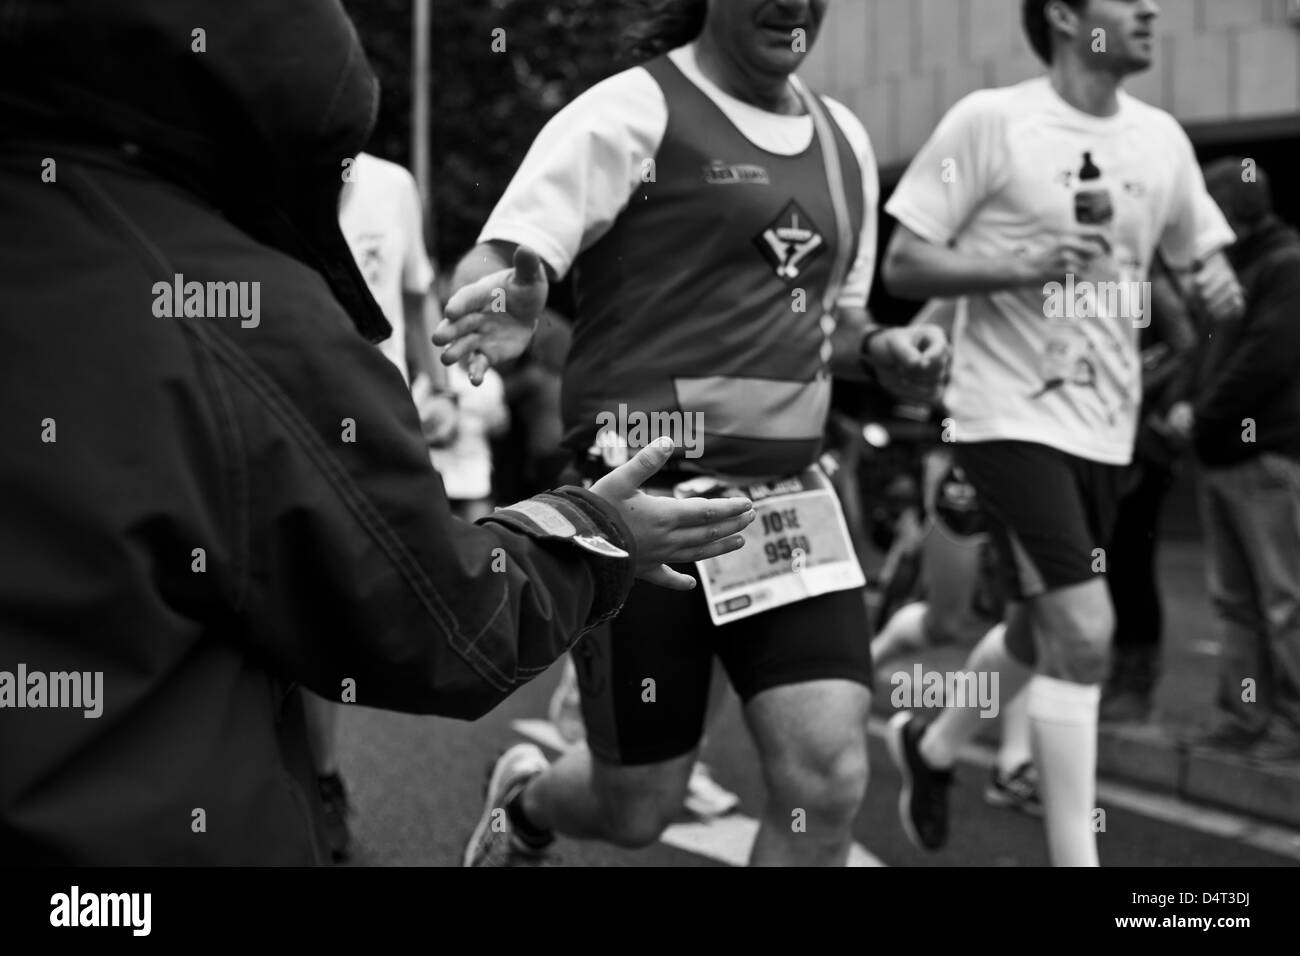 Maratona di Barcellona 2013 Foto Stock